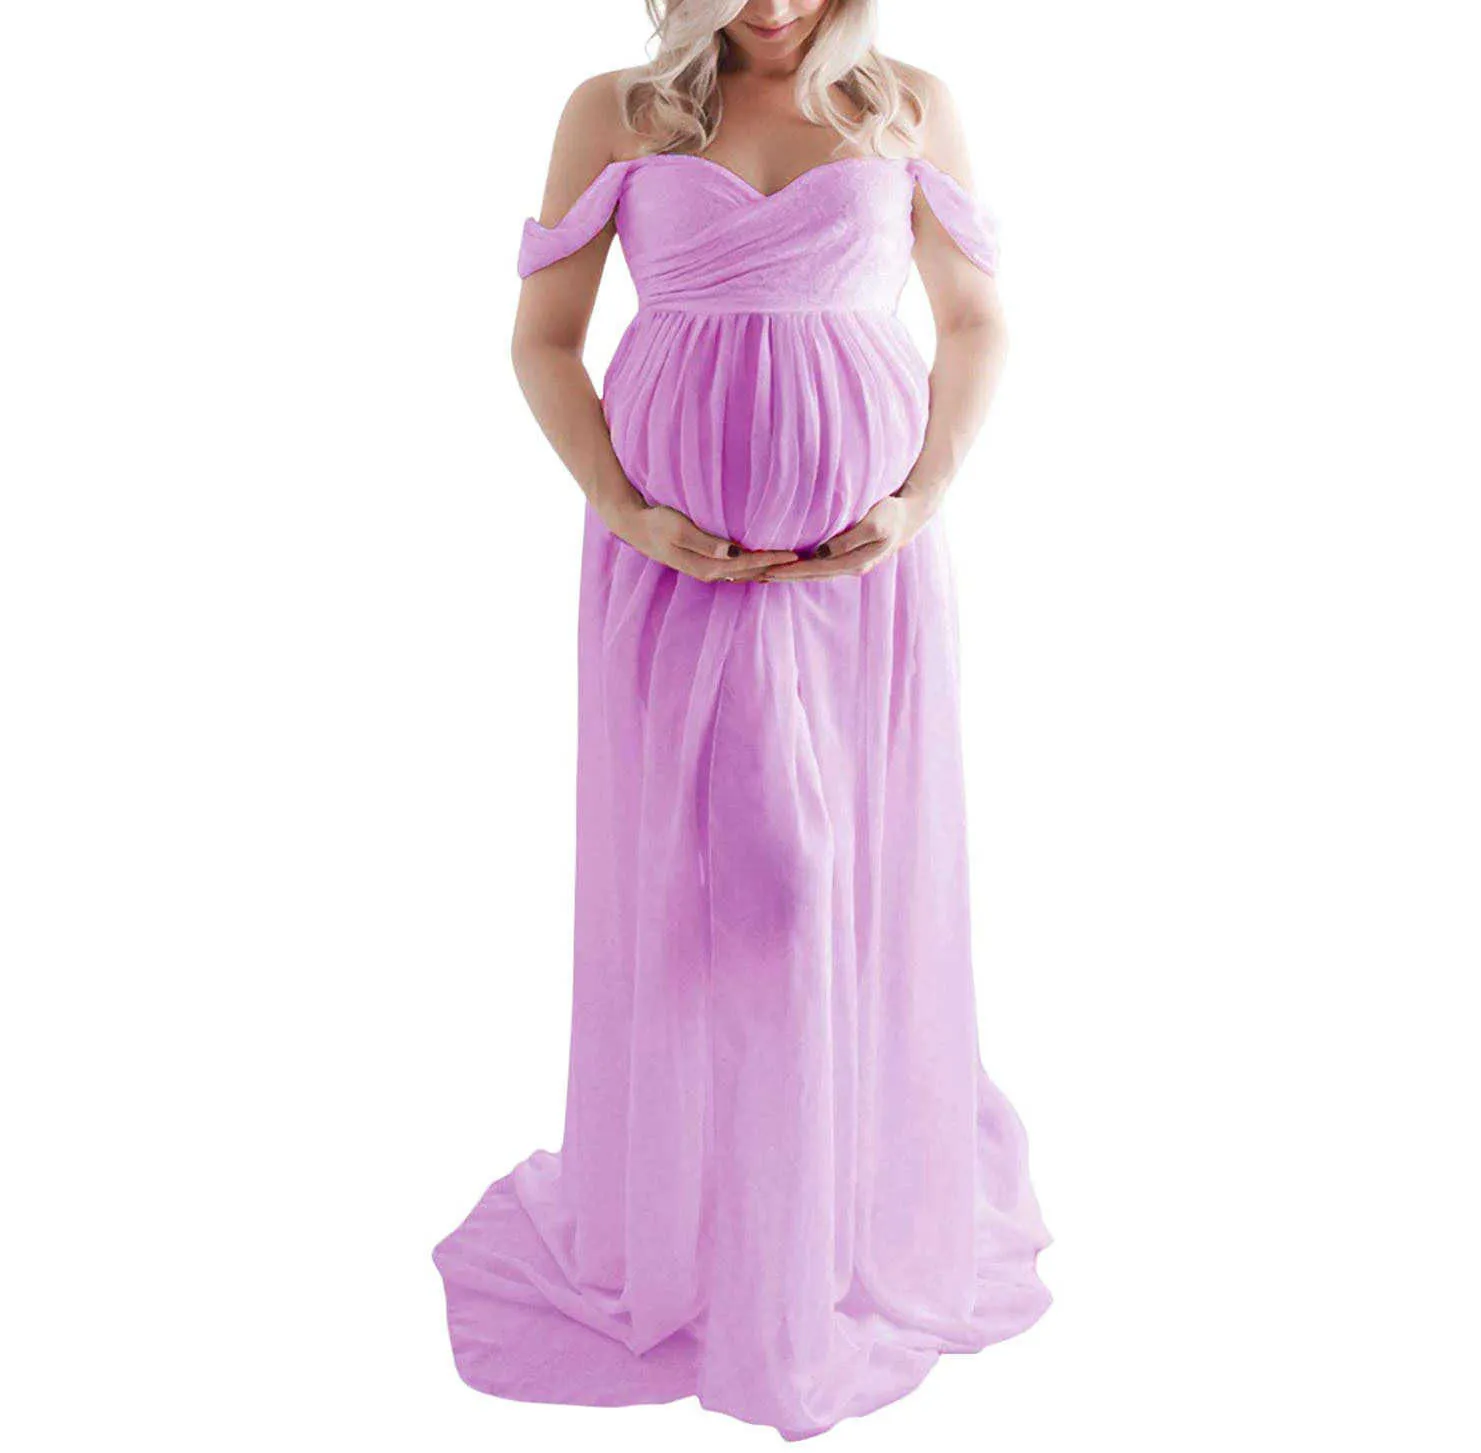 Nuovi abiti premaman 2021 il servizio fotografico Le donne incinte aprono il vestito con gonna lunga Mop prima di scattare foto Abiti in gravidanza Y0924